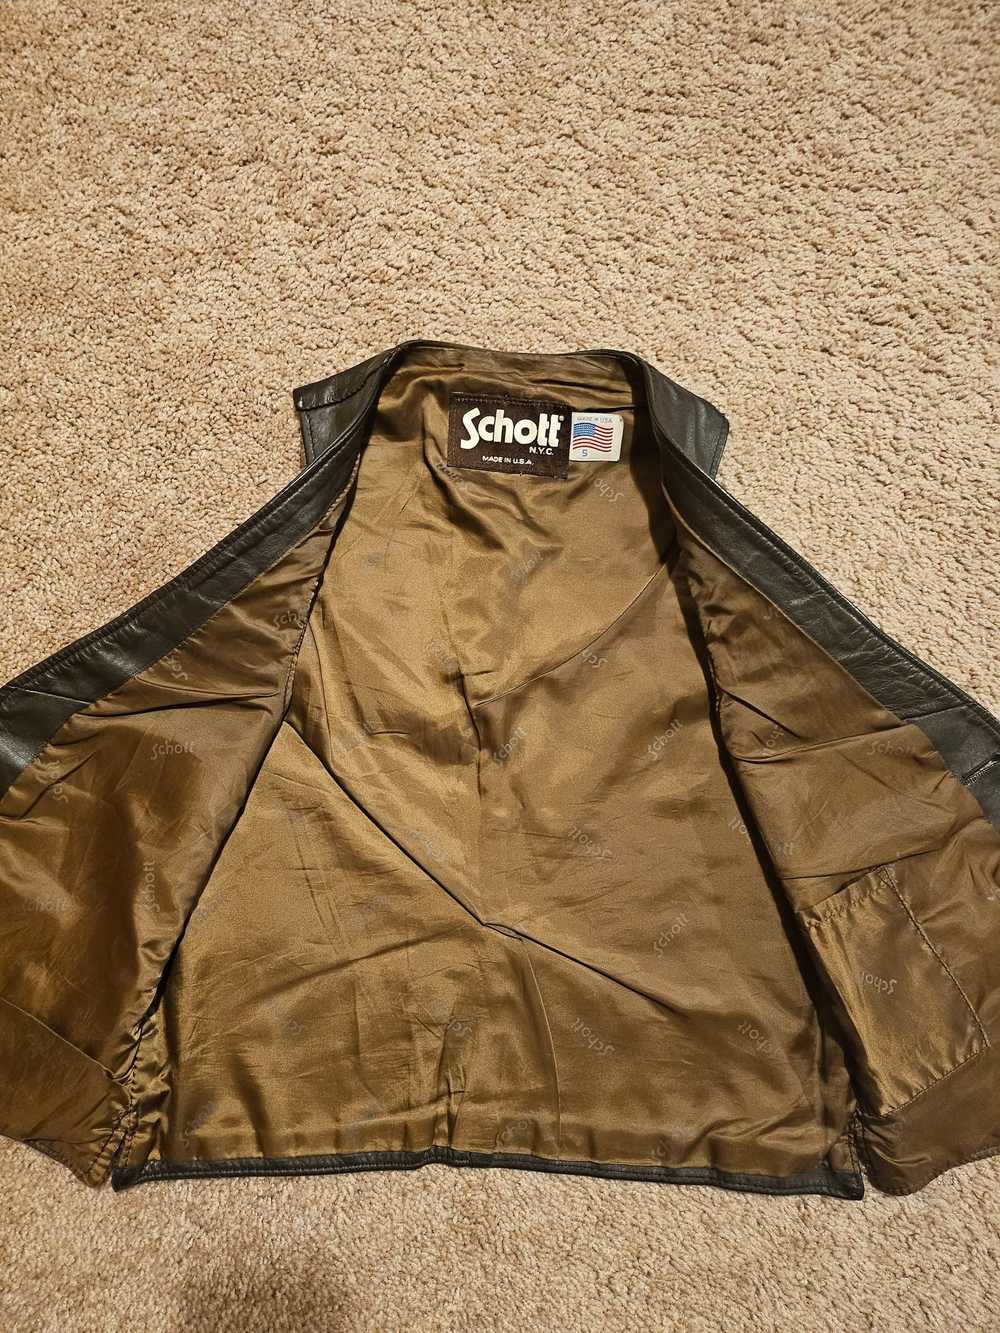 Schott Schott Leather Vest/Waistcoat - image 2